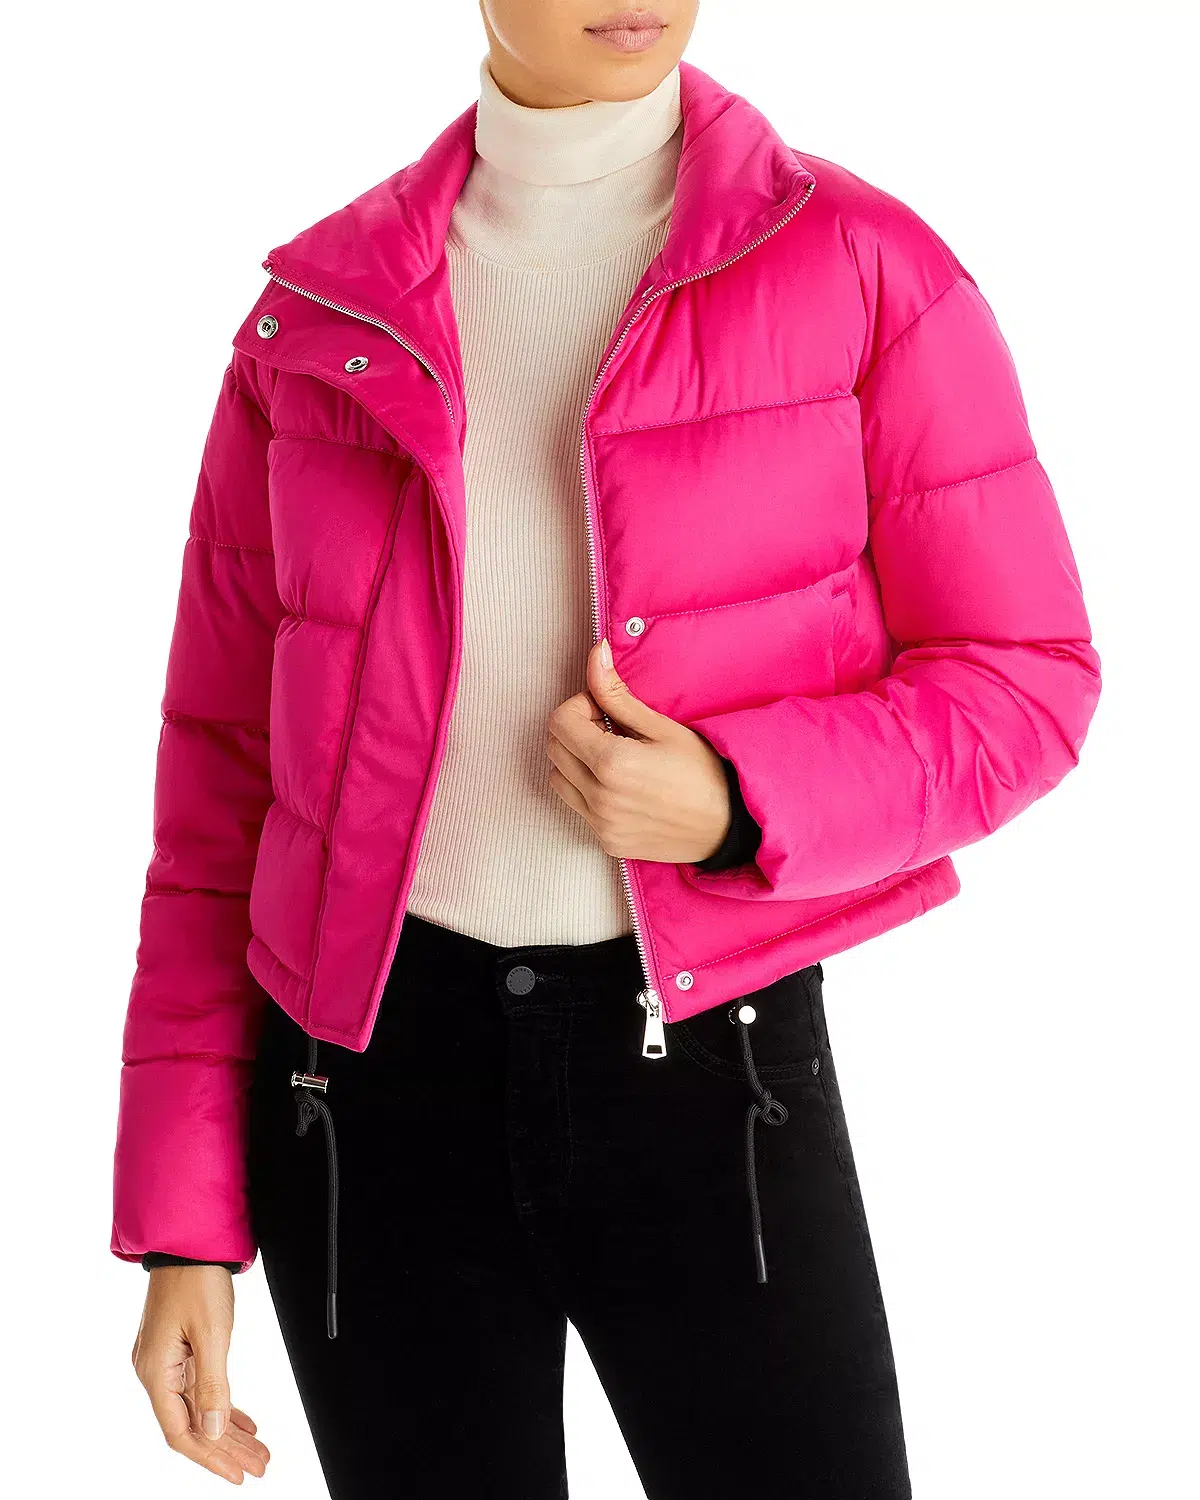 6. AQUA Fuschia Pink Puffer Jacket